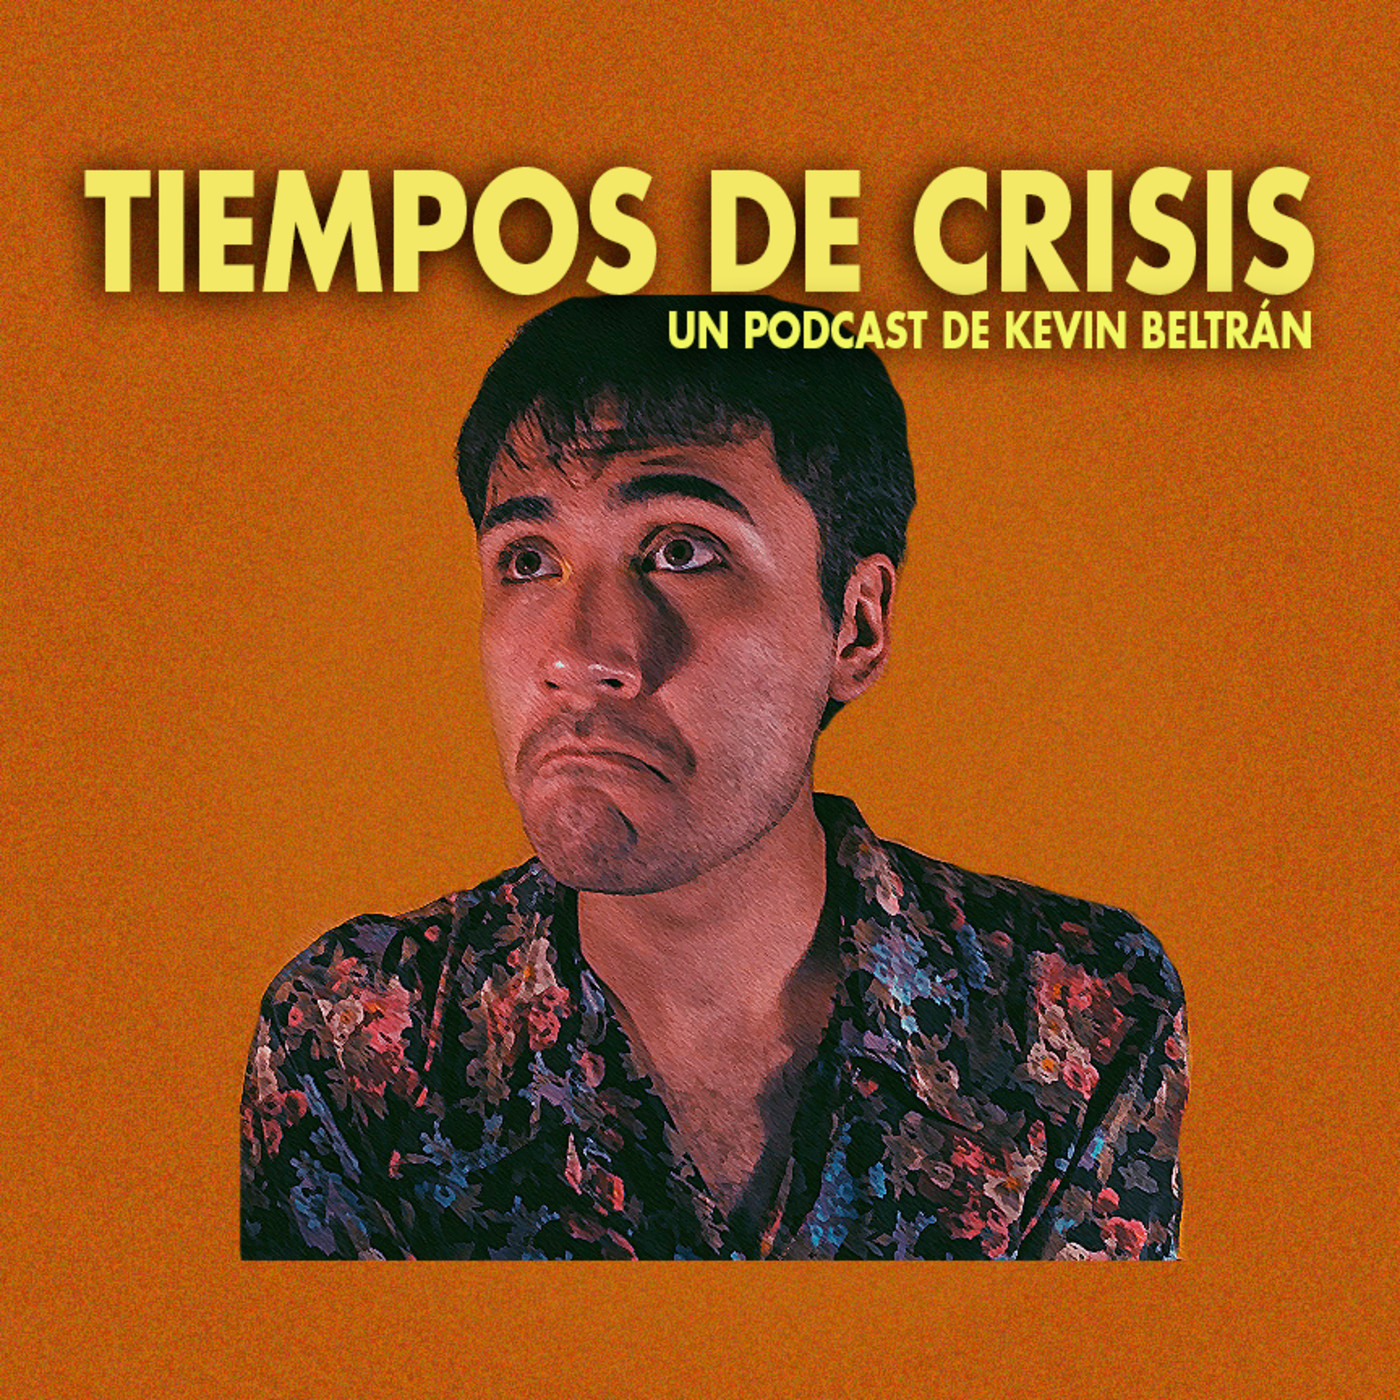 TIEMPOS DE CRISIS EP. 01.- Hola, esta es mi voz.